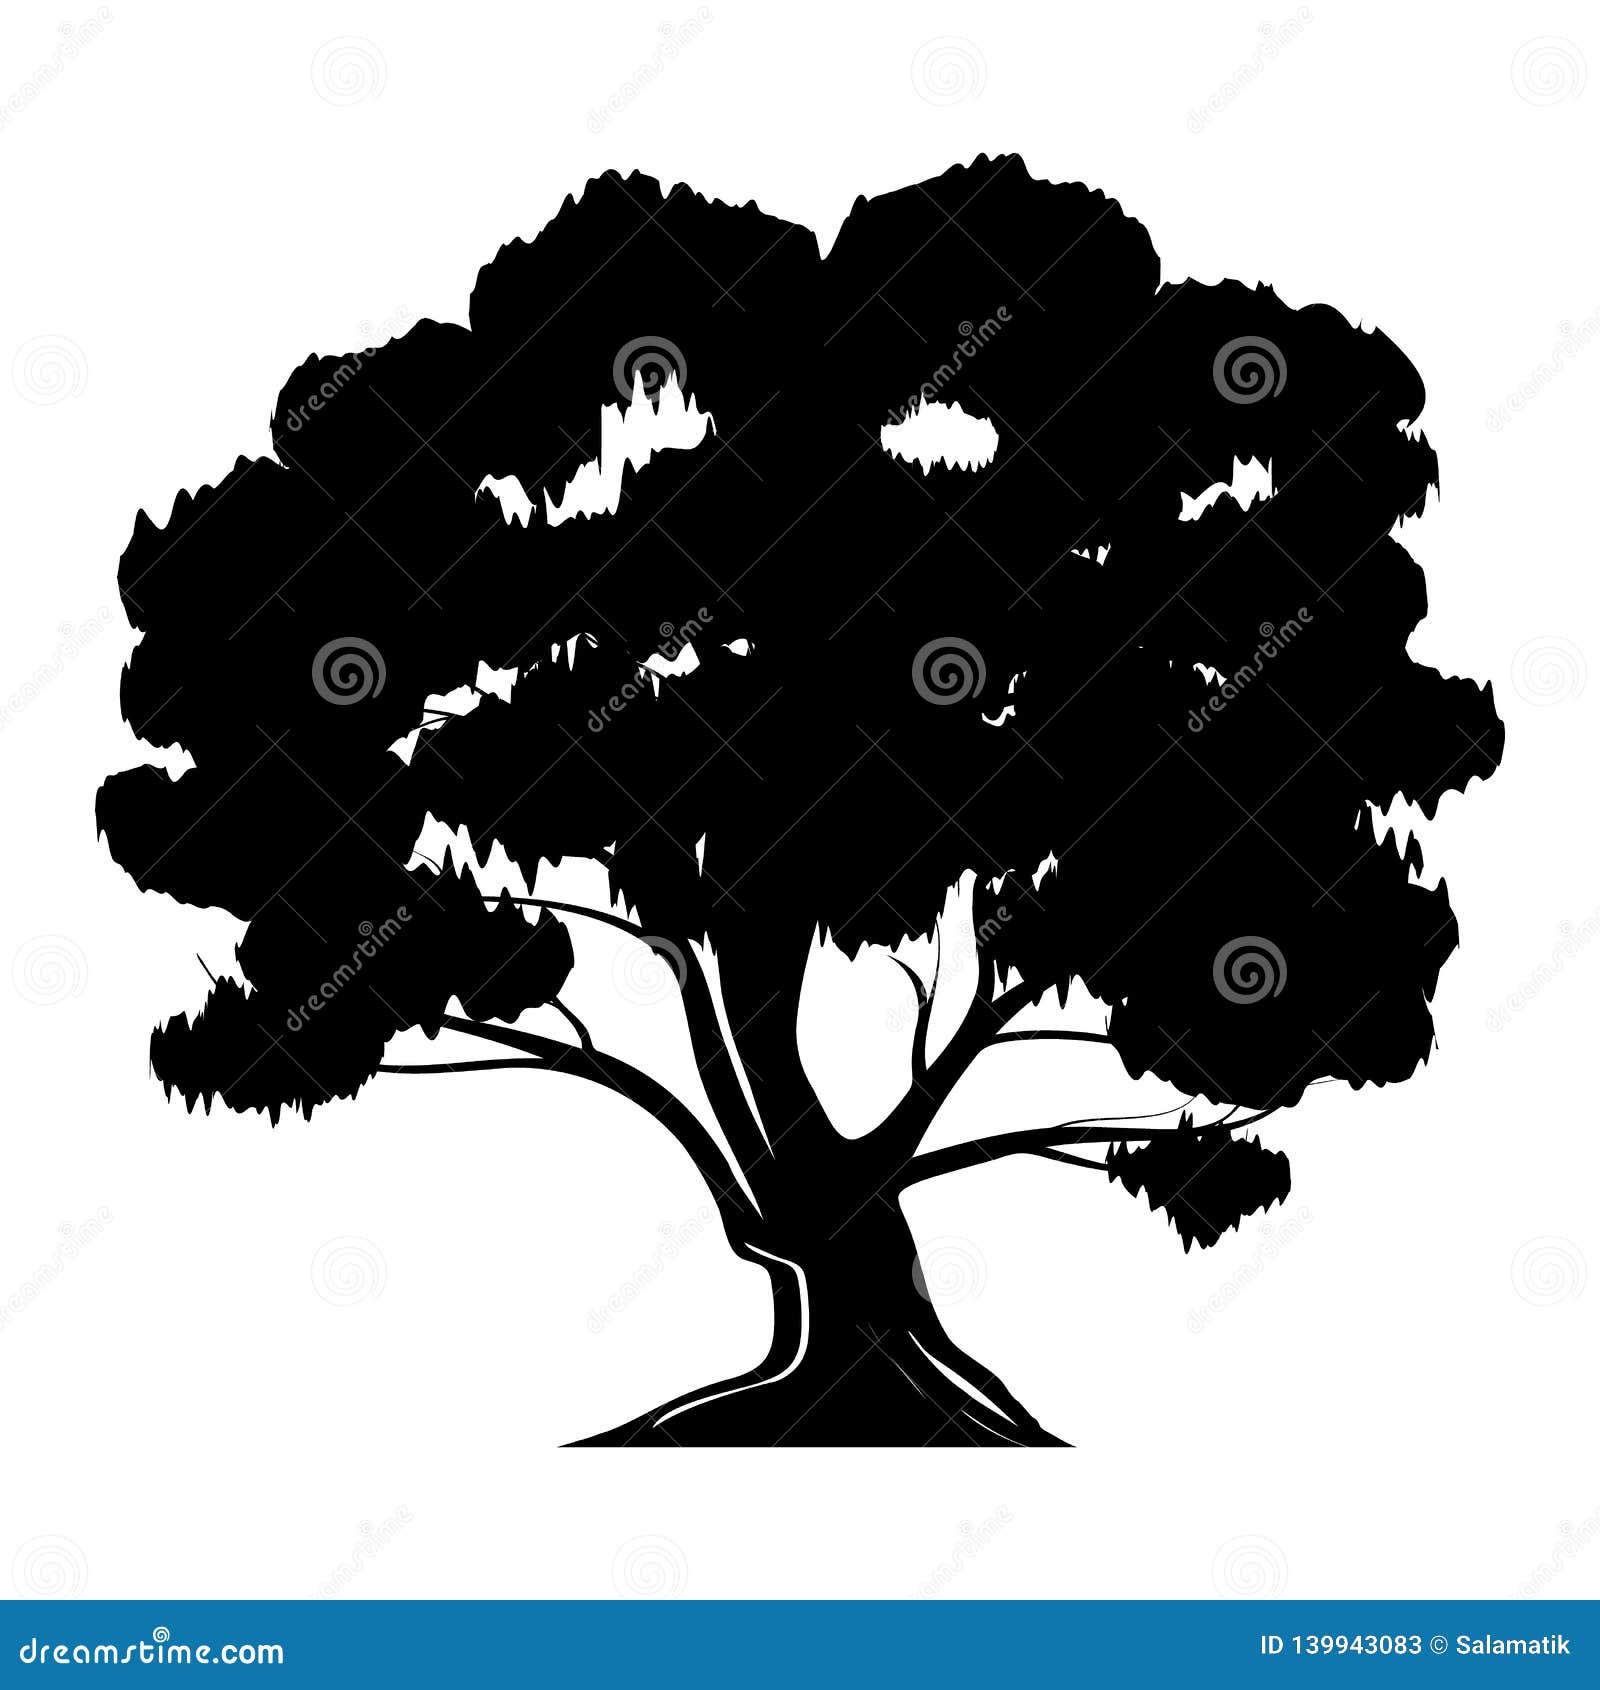 Rễ cây đen trắng: Rễ cây đen trắng tạo nên một khung cảnh tuyệt đẹp và bí ẩn, khiến cho ai nhìn vào cũng phải cảm thấy thích thú. Nó là một sự kết hợp độc đáo giữa hai màu sắc tương phản nhau, mang lại sự độc đáo và khác biệt cho không gian sống của bạn.